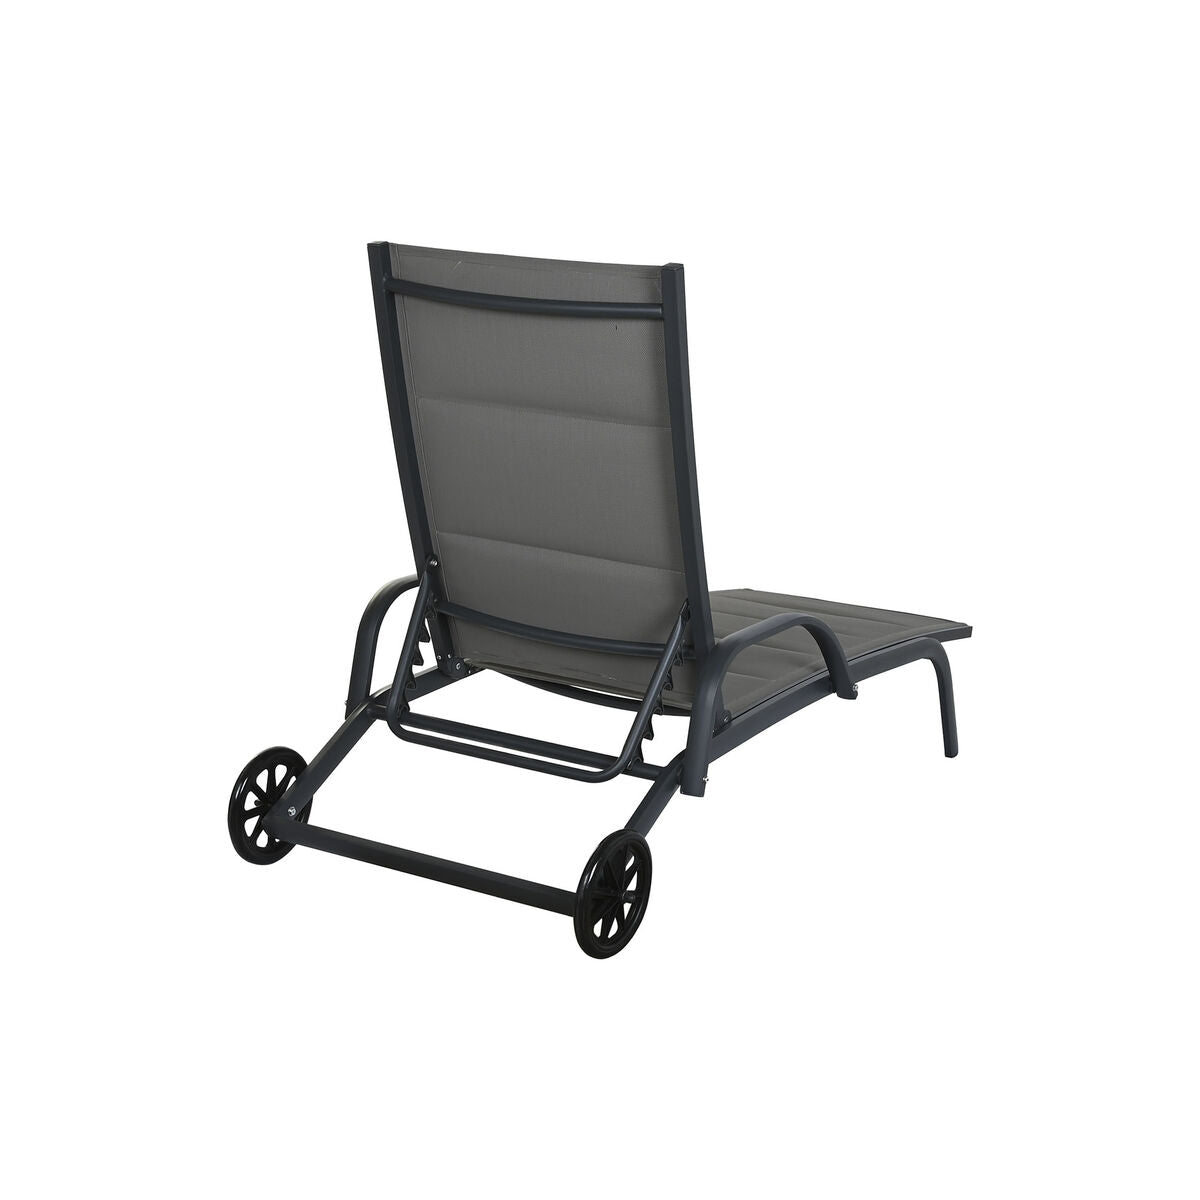 Chaise longue Design Moderne avec roues Home Decor Beige Aluminium (193 x 70 x 30 cm)